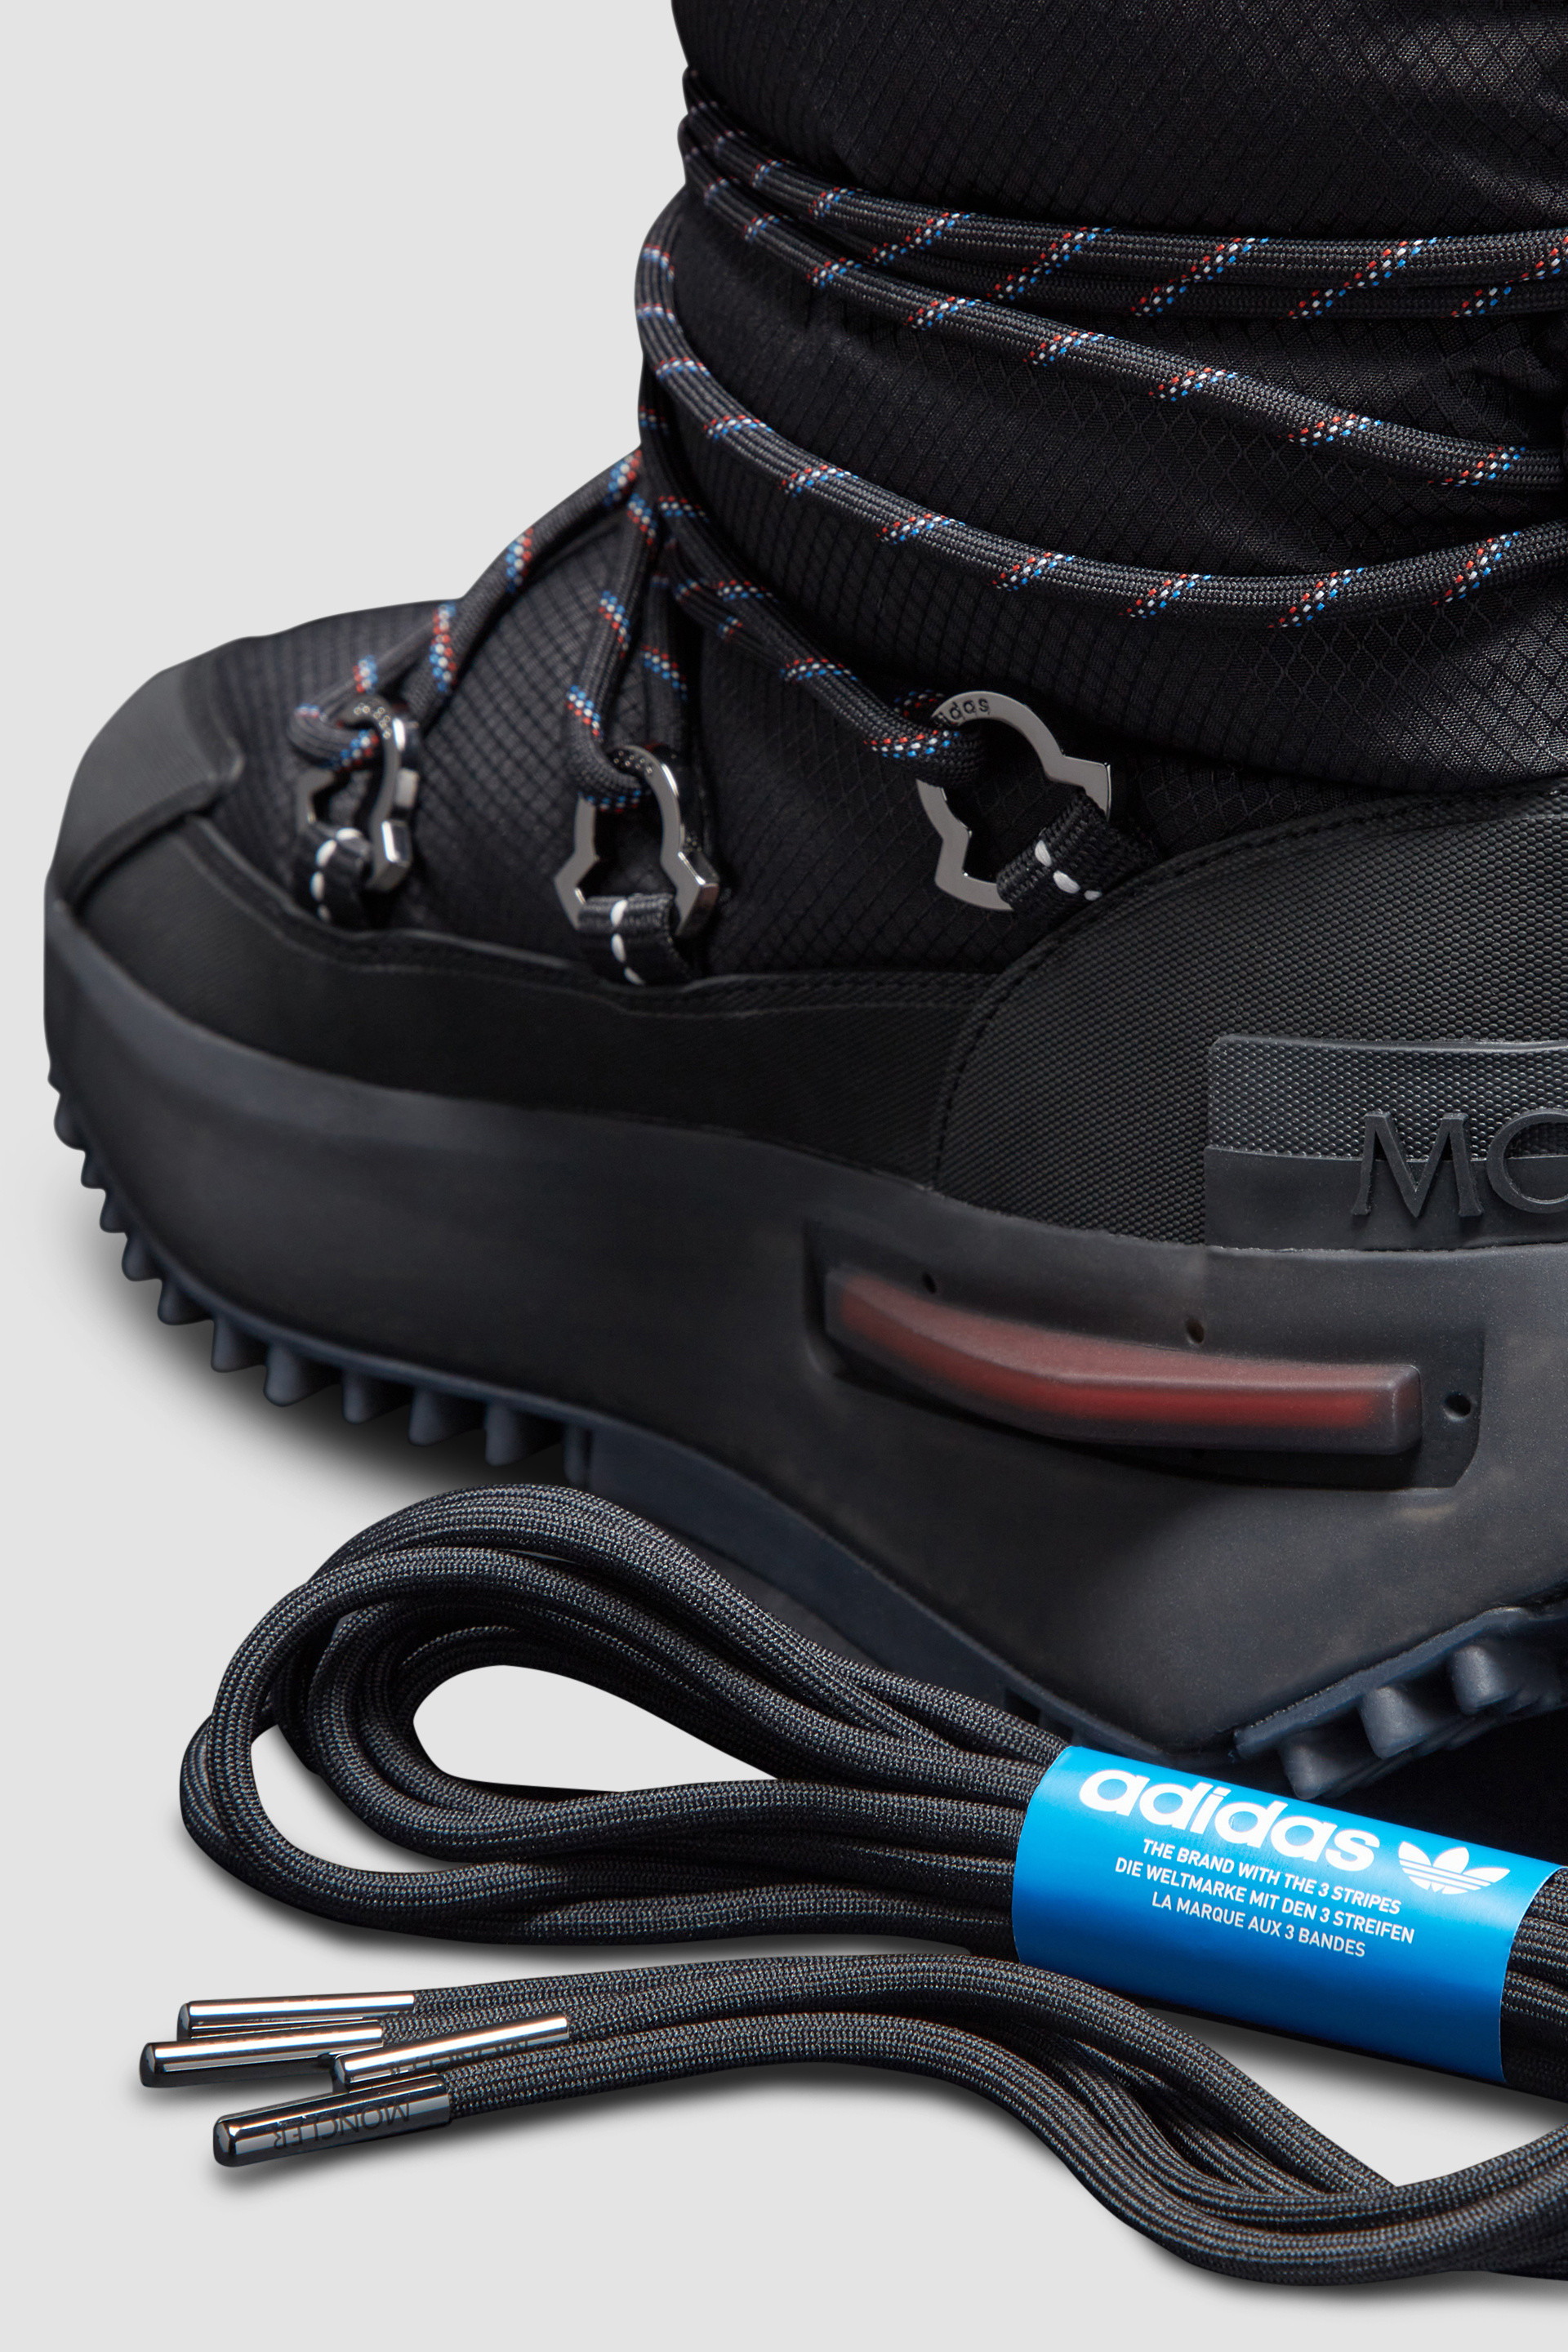 ブラック Moncler NMD Midブーツ : Moncler x adidas Originals 向けの